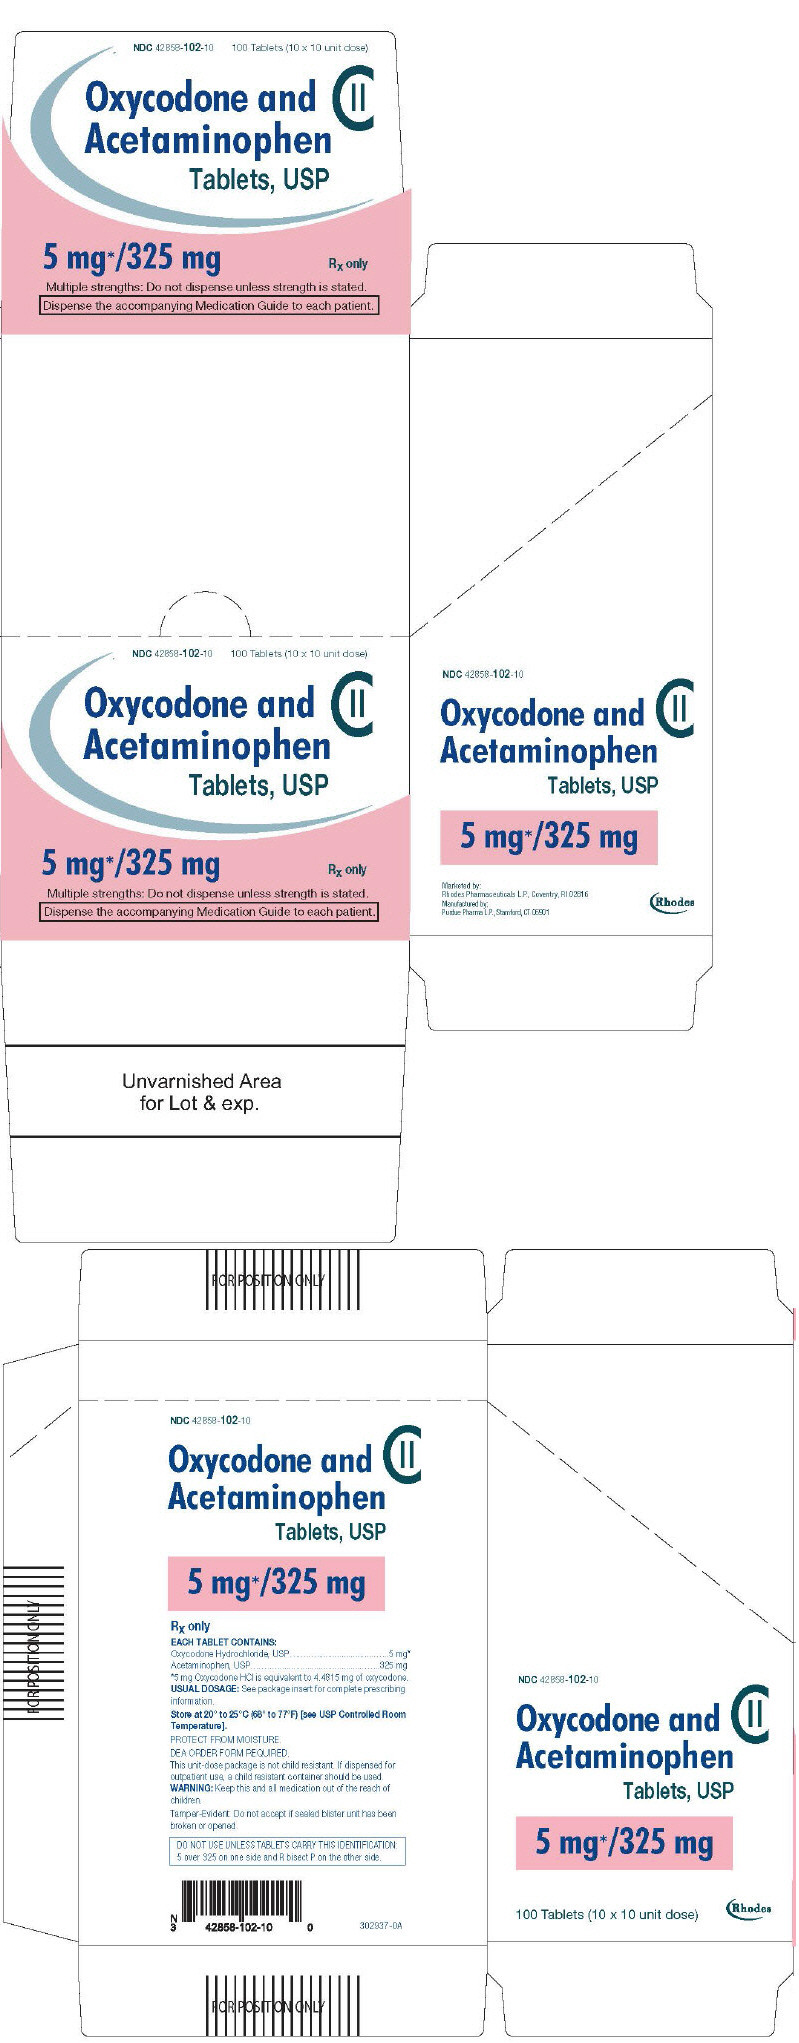 PRINCIPAL DISPLAY PANEL - 5 mg/325 mg Tablet Blister Pack Carton